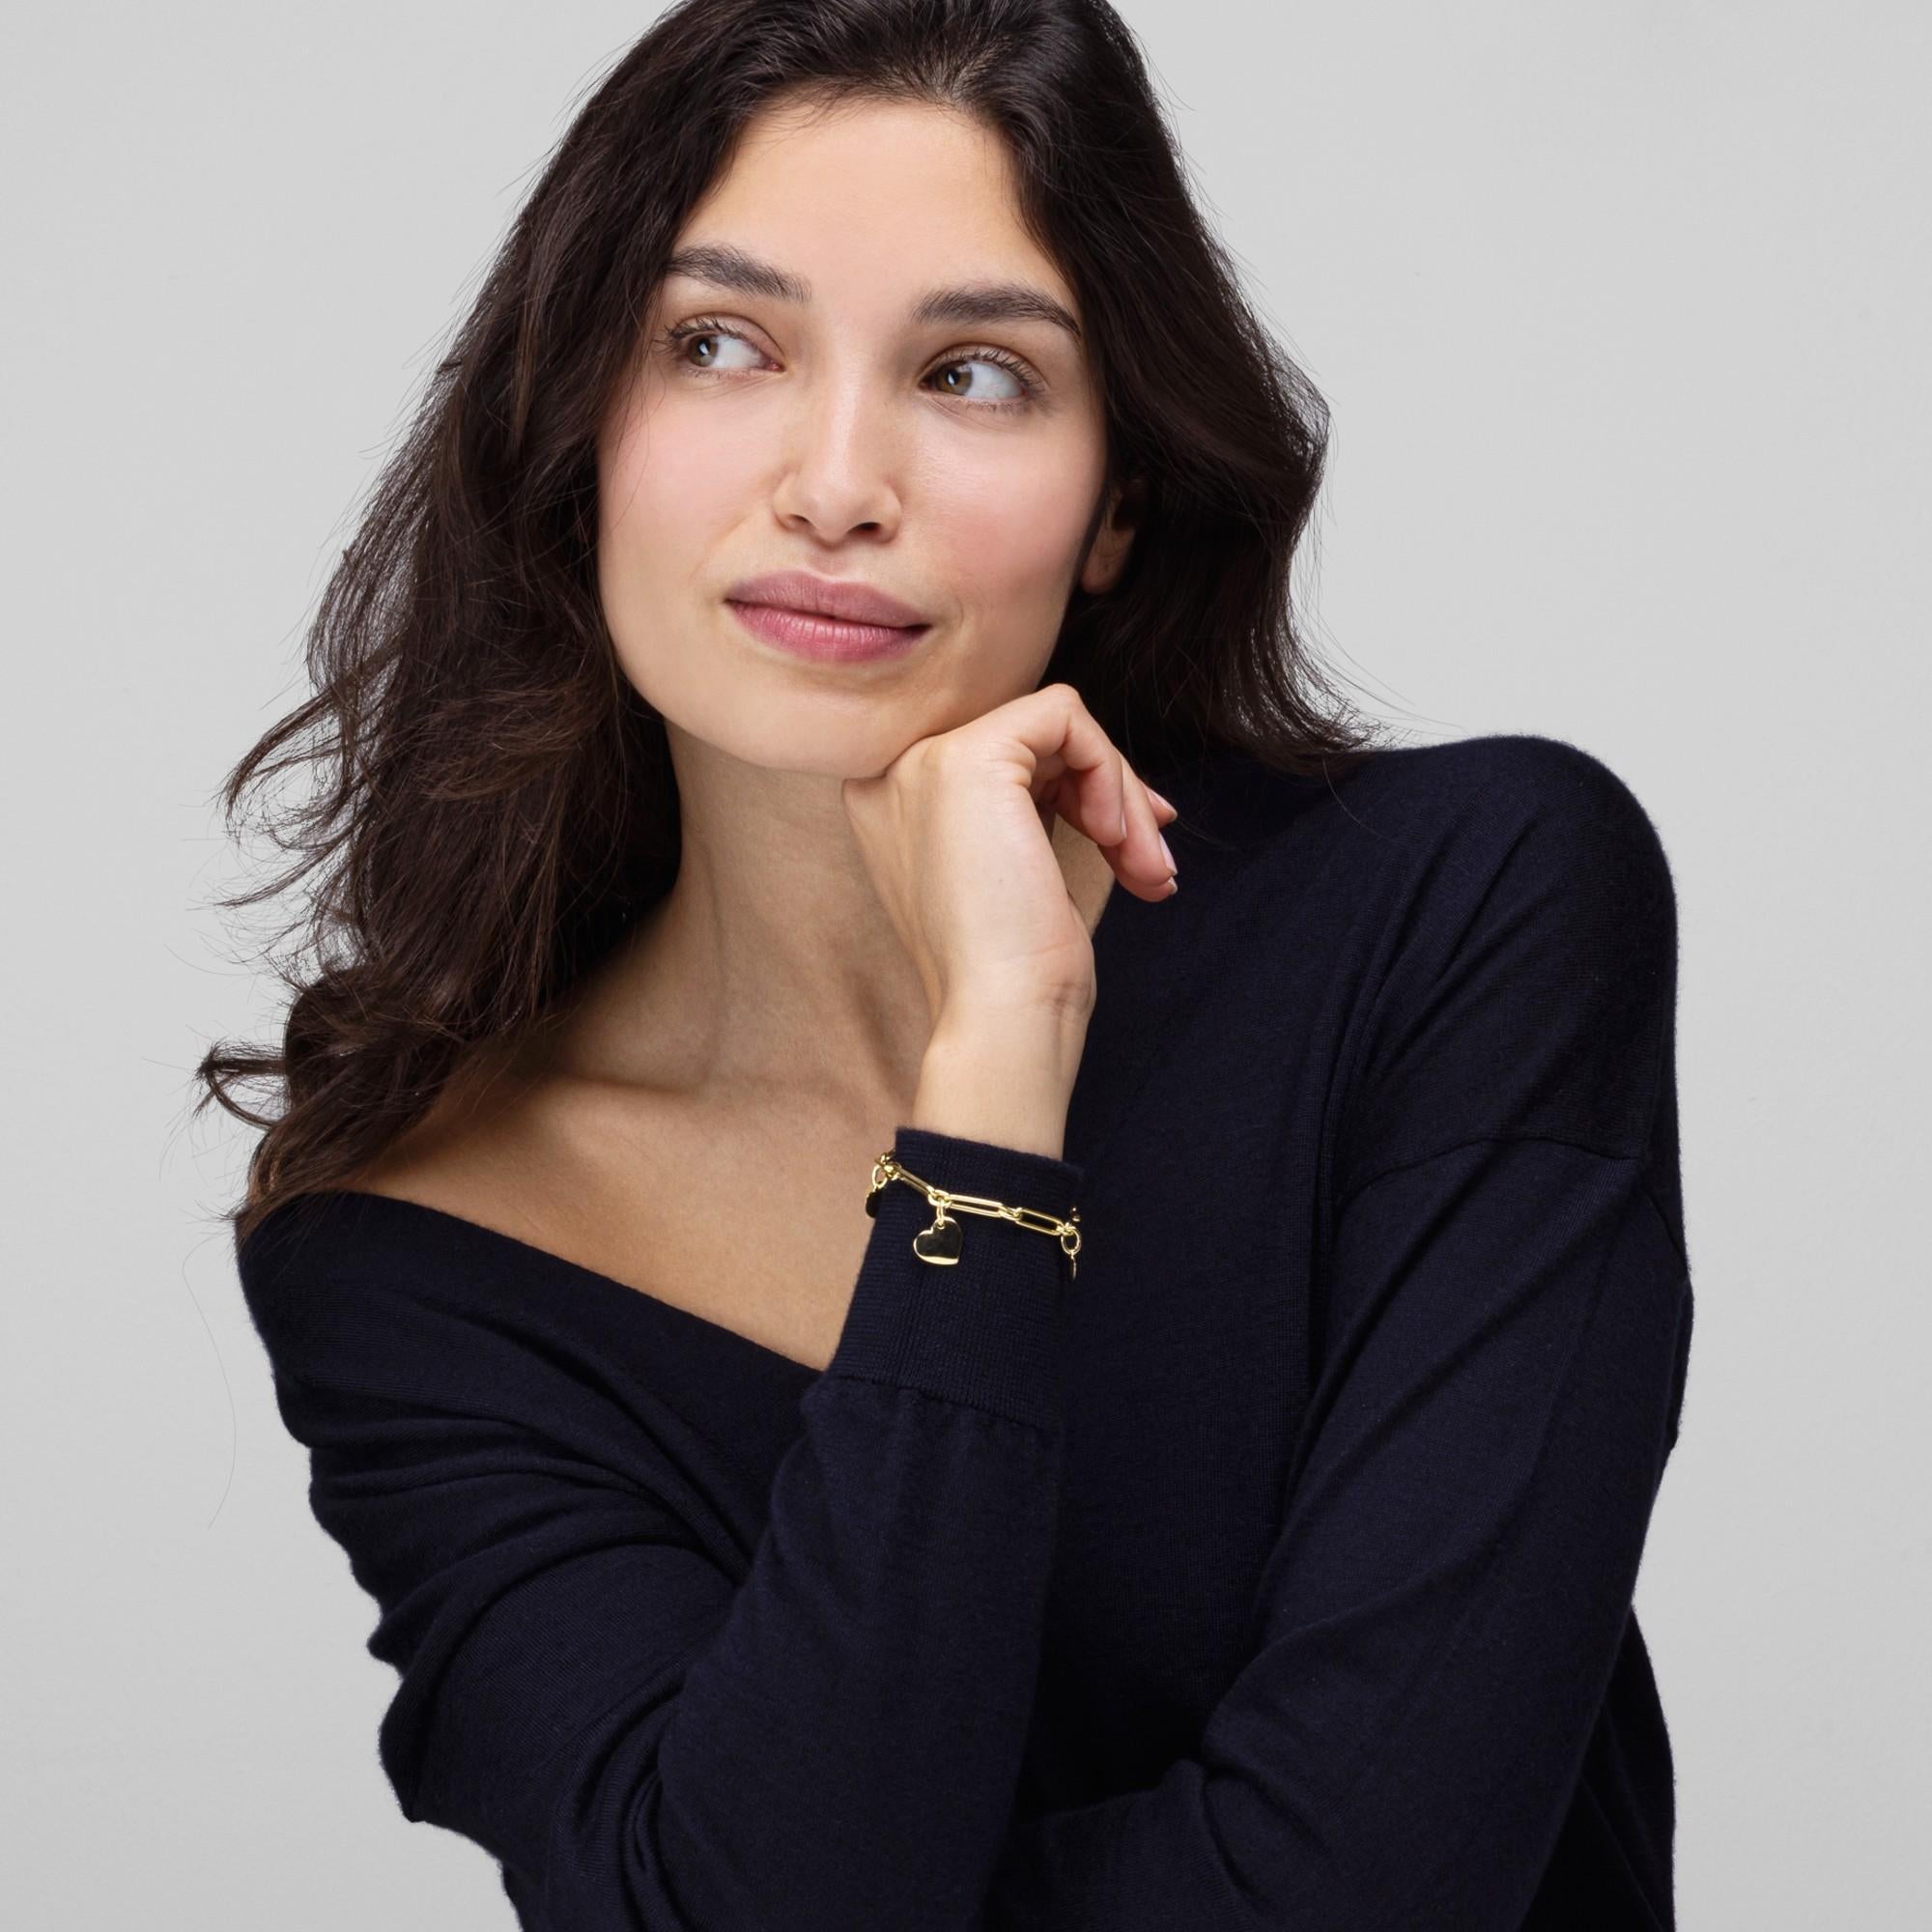 Alex Jona Design Kollektion, handgefertigt in Italien, 18 Karat Gelbgold Herz Charme Kette Armband.

Die Juwelen von Alex Jona zeichnen sich nicht nur durch ihr besonderes Design und die hervorragende Qualität der Edelsteine aus, sondern auch durch